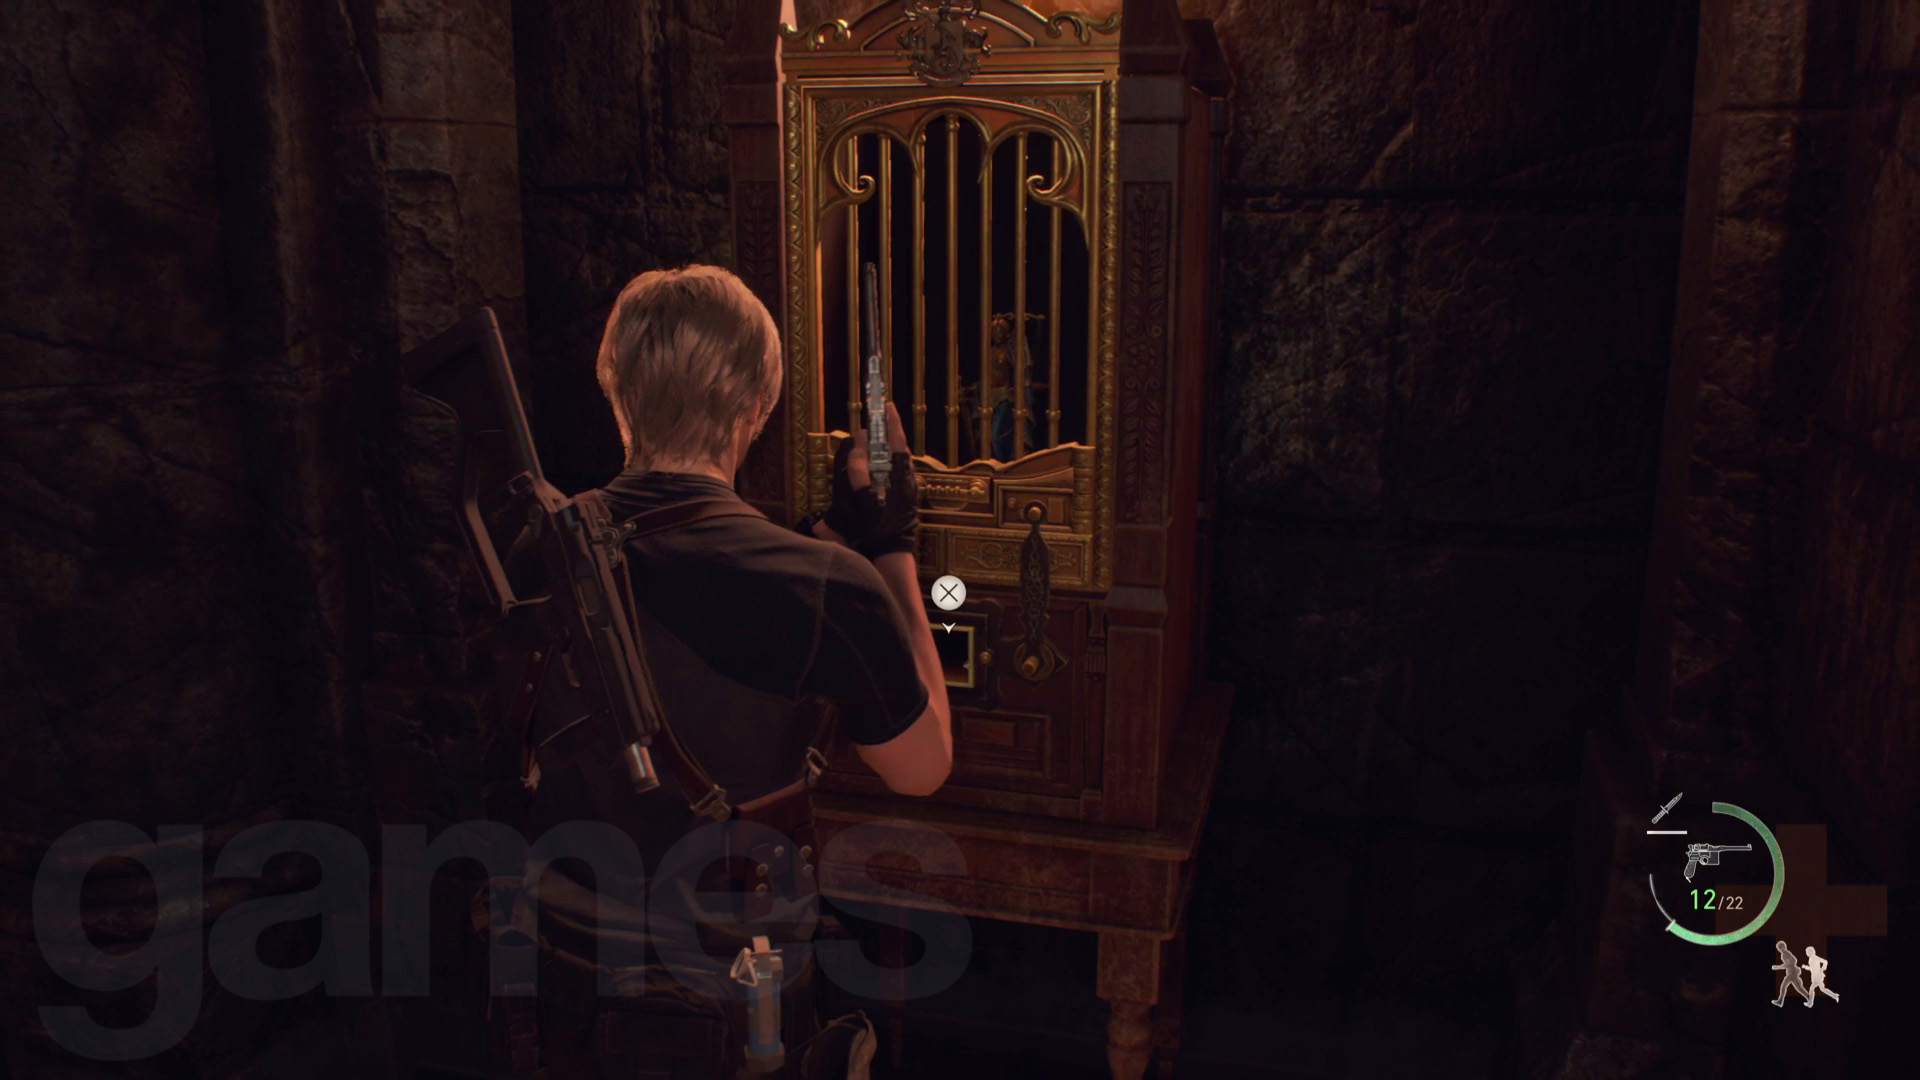 Resident Evil 4 - Slide Puzzle Walkthrough 